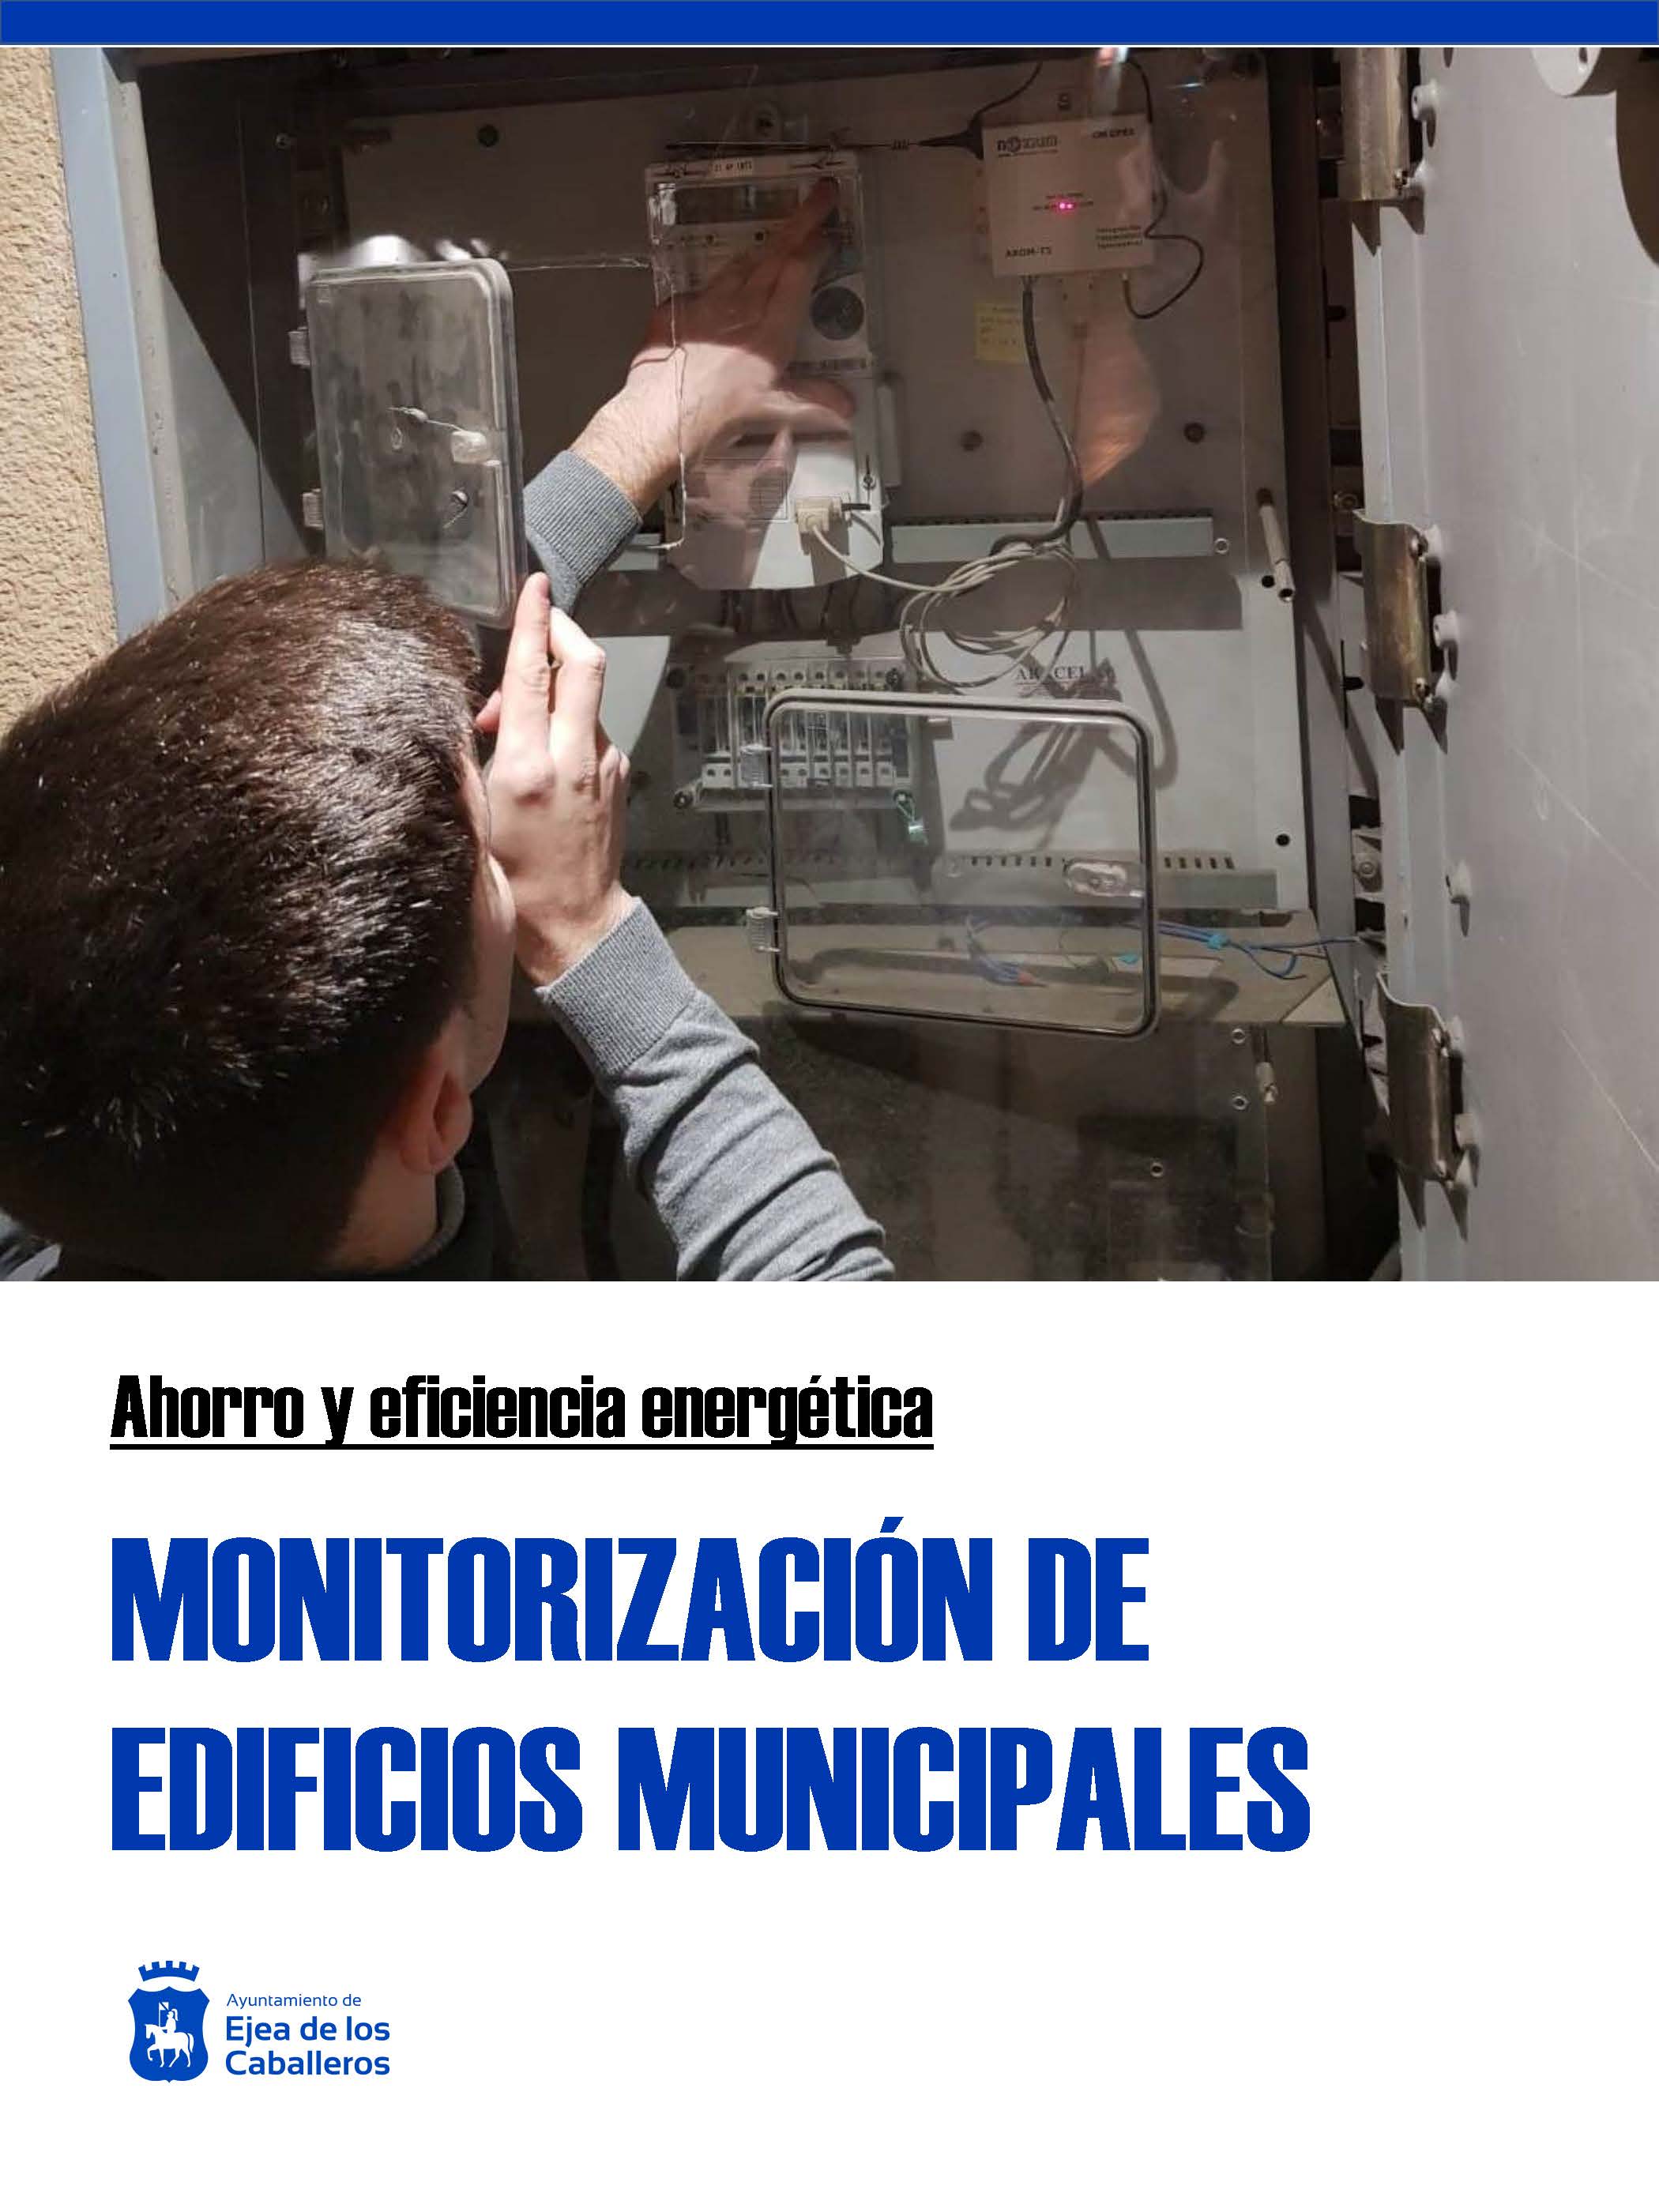 En este momento estás viendo El Ayuntamiento de Ejea de los Caballeros pone en marcha un estudio de monitorización y gestión de eficiencia energética en edificios municipales